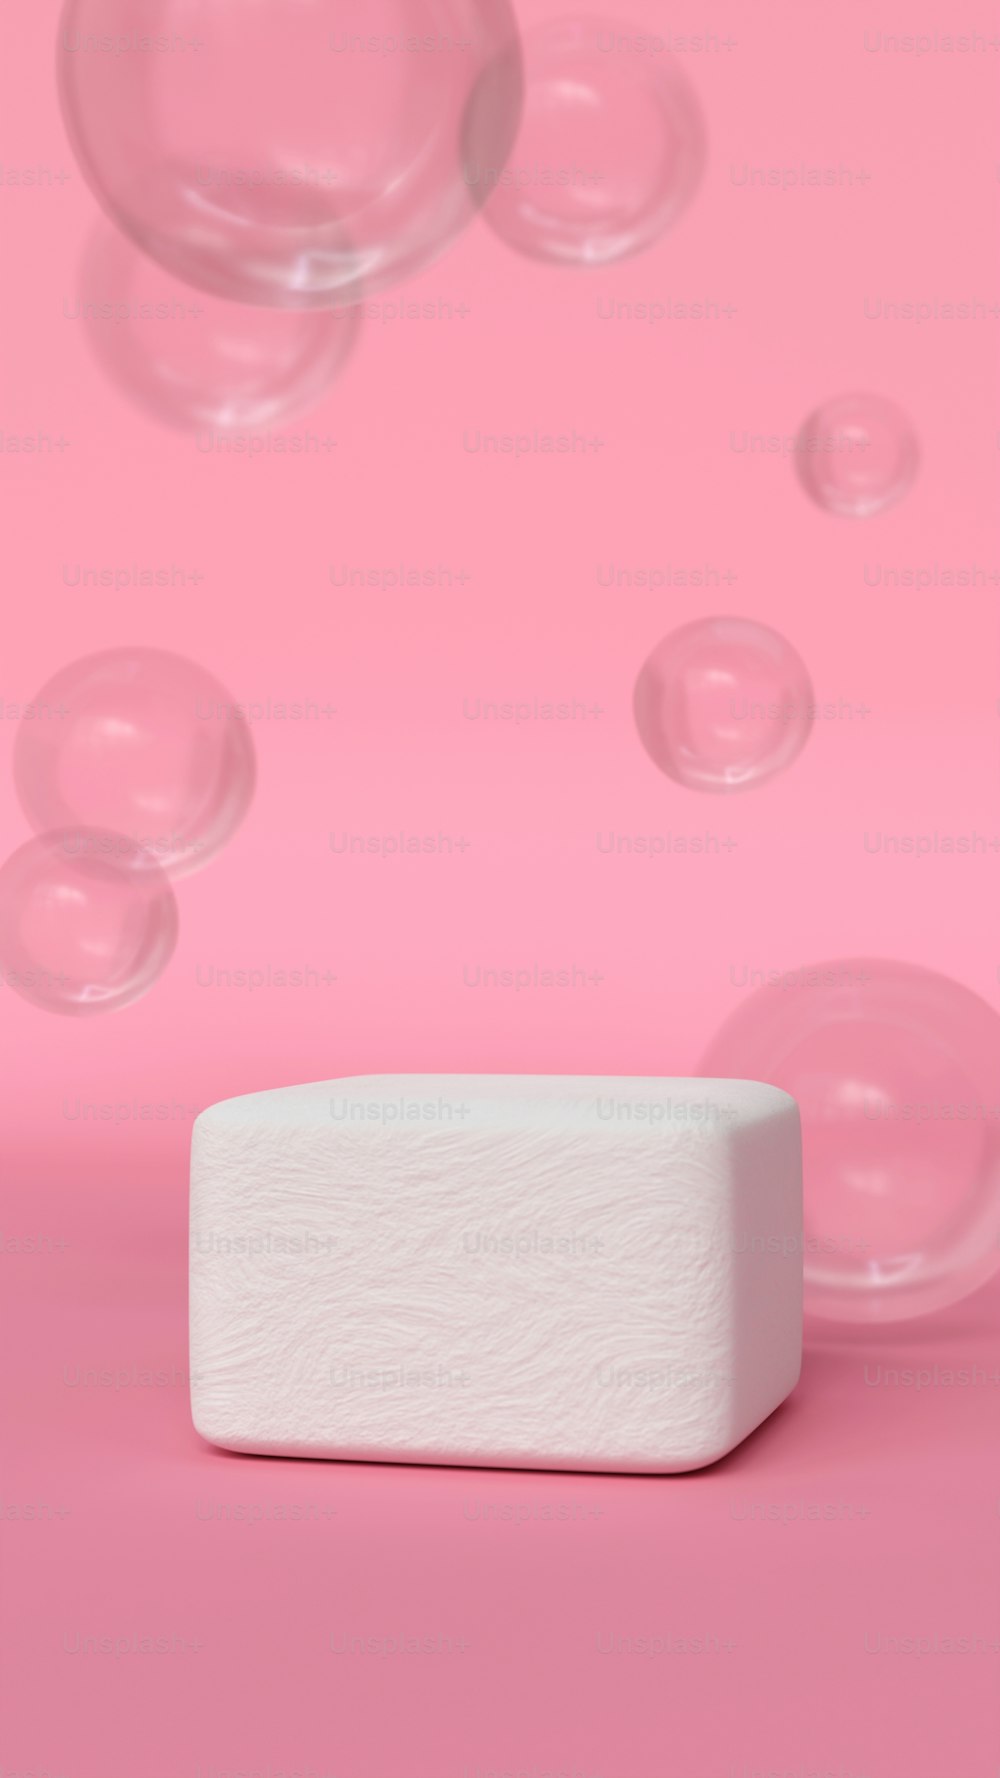 ein Seifenstück sitzt auf einer rosa Oberfläche